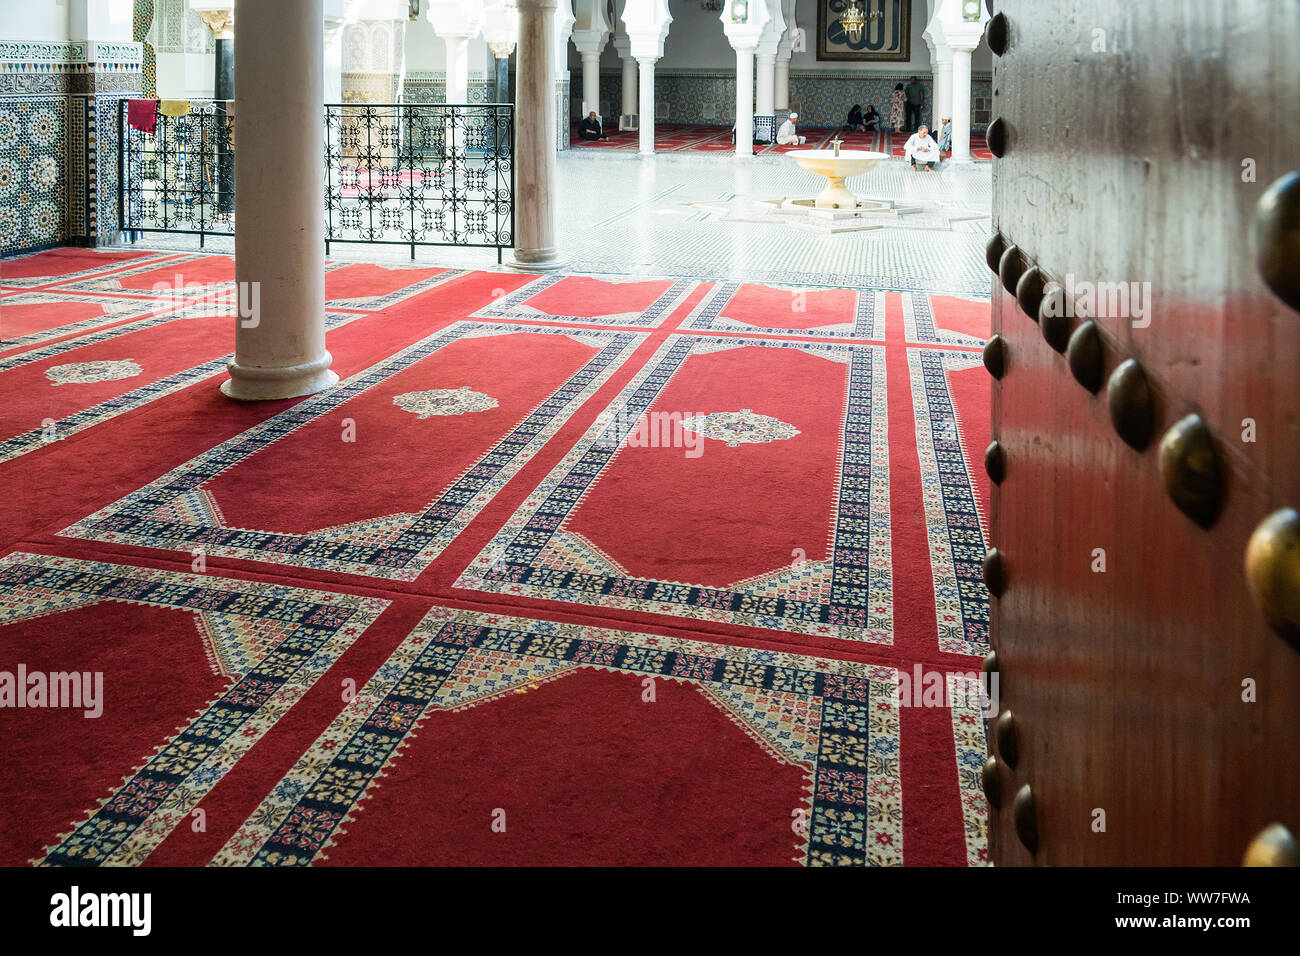 Maroc, Fès, Médina, souk, l'entrée d'une mosquée, tapis de prière Banque D'Images